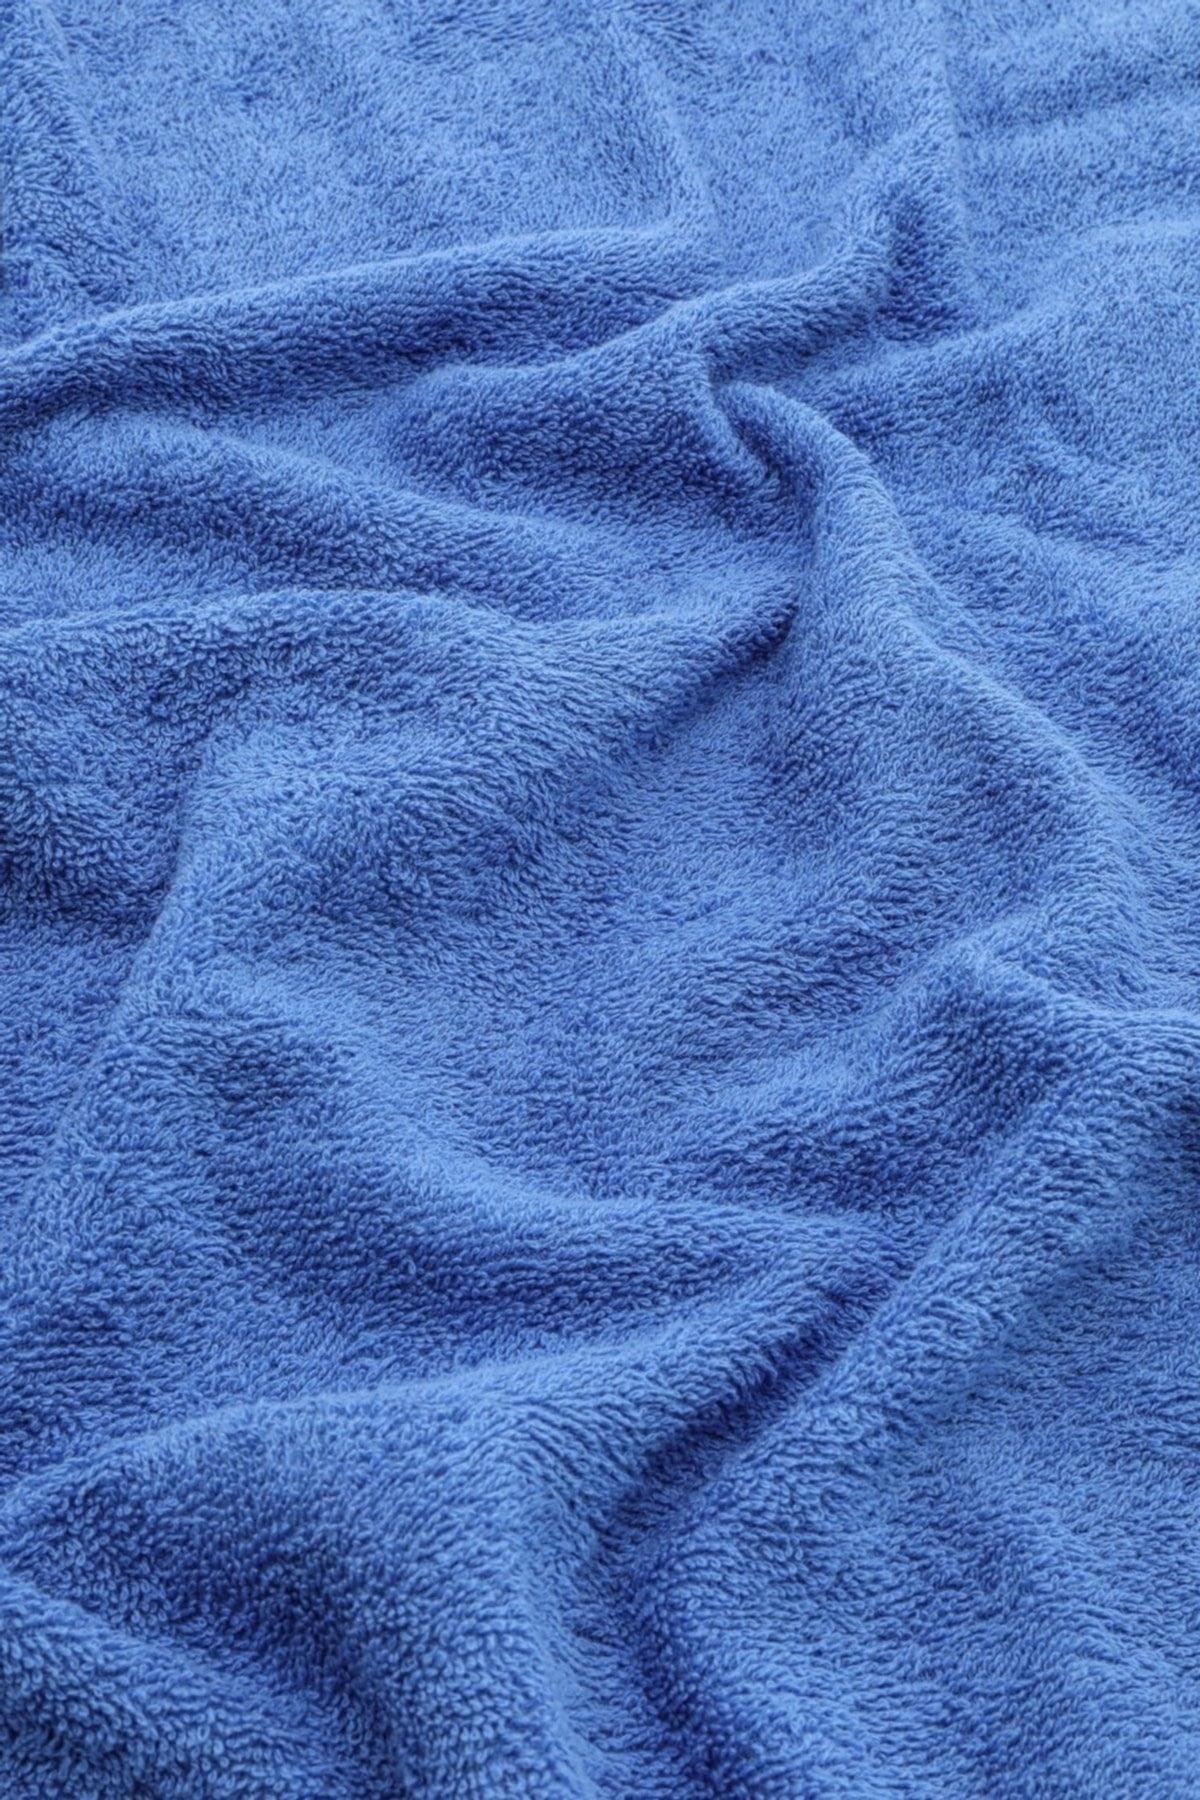 2 Pcs Cotton Hand Face Towel 50x90 - Blue